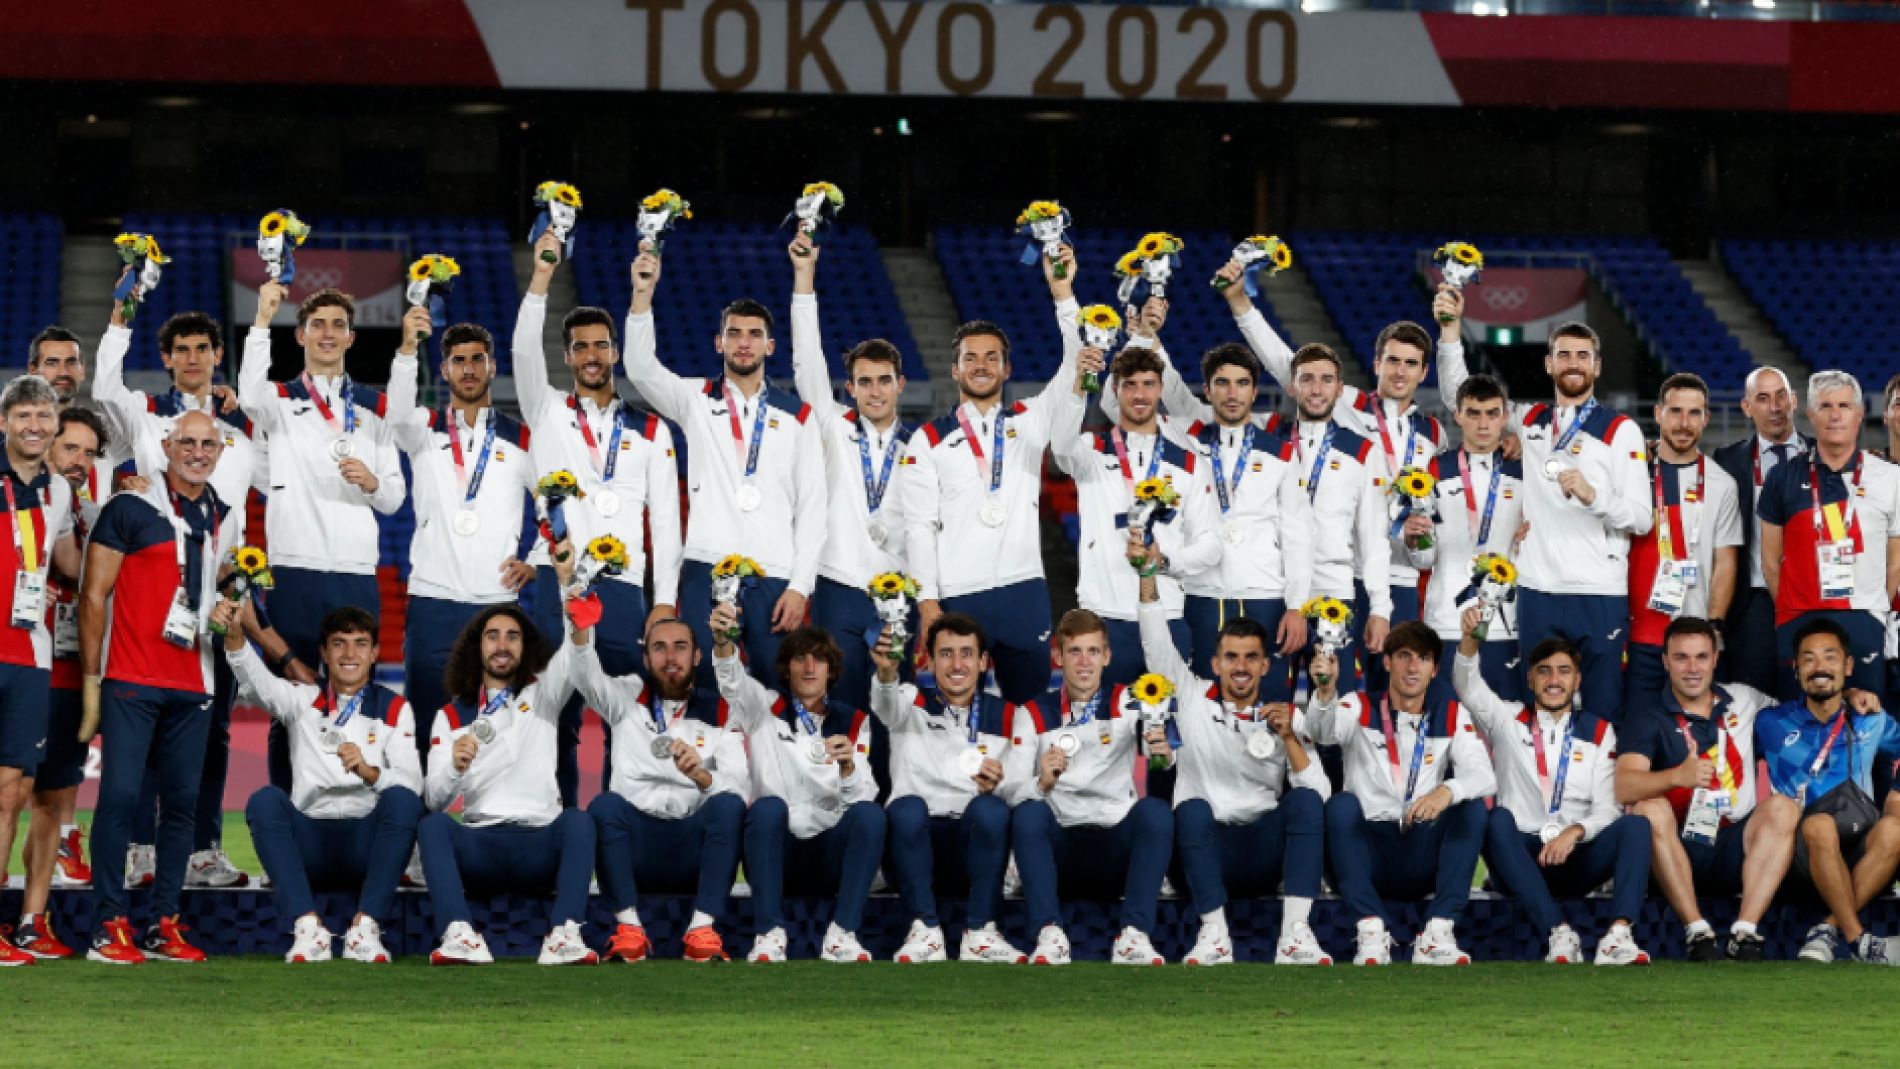 La Federación homenajeará a la selección tras la plata en los Juegos Olímpicos foto